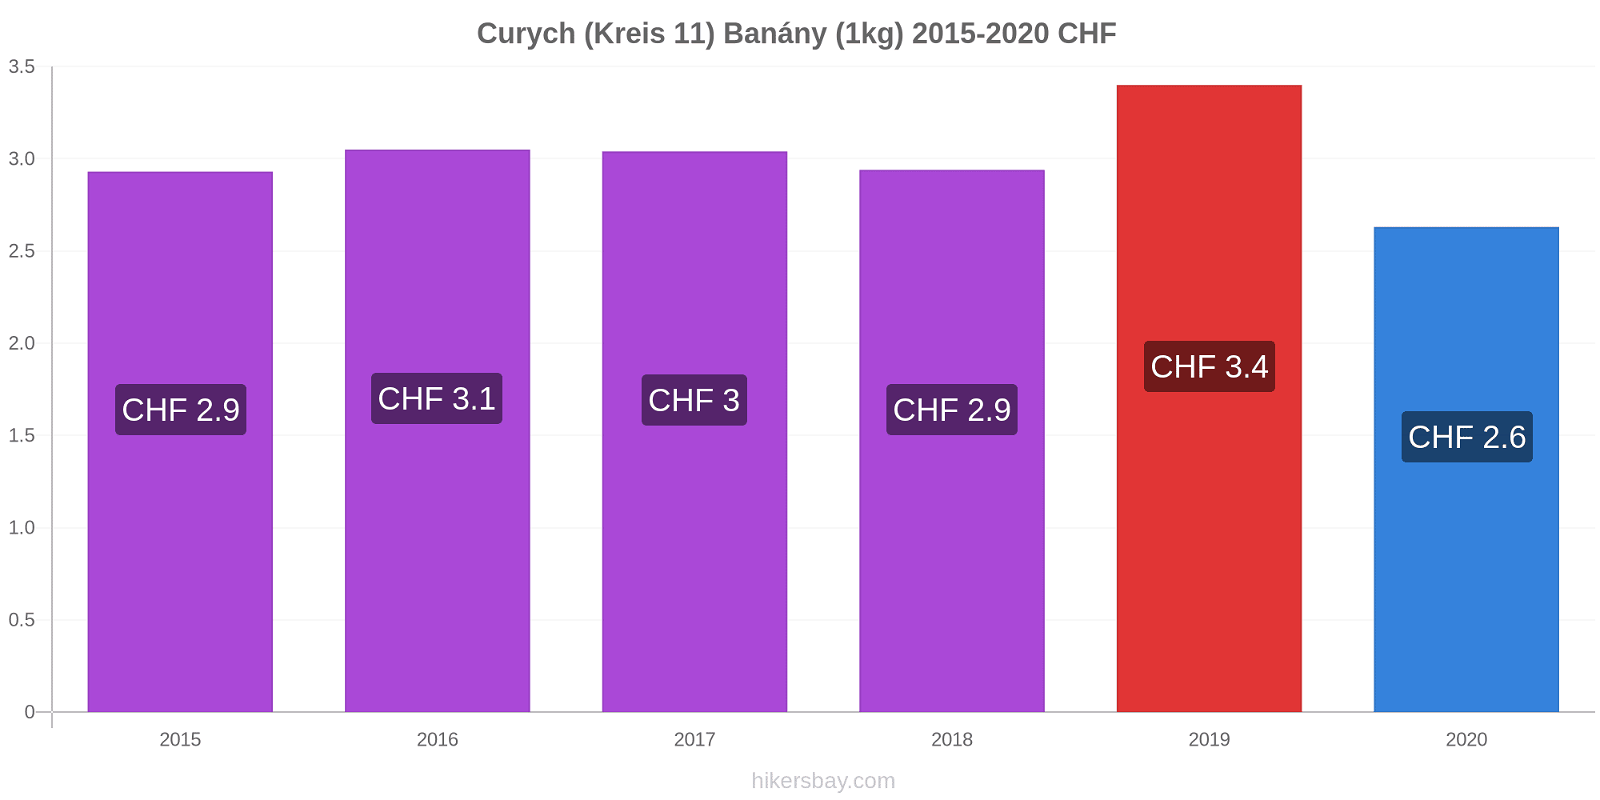 Curych (Kreis 11) změny cen Banány (1kg) hikersbay.com